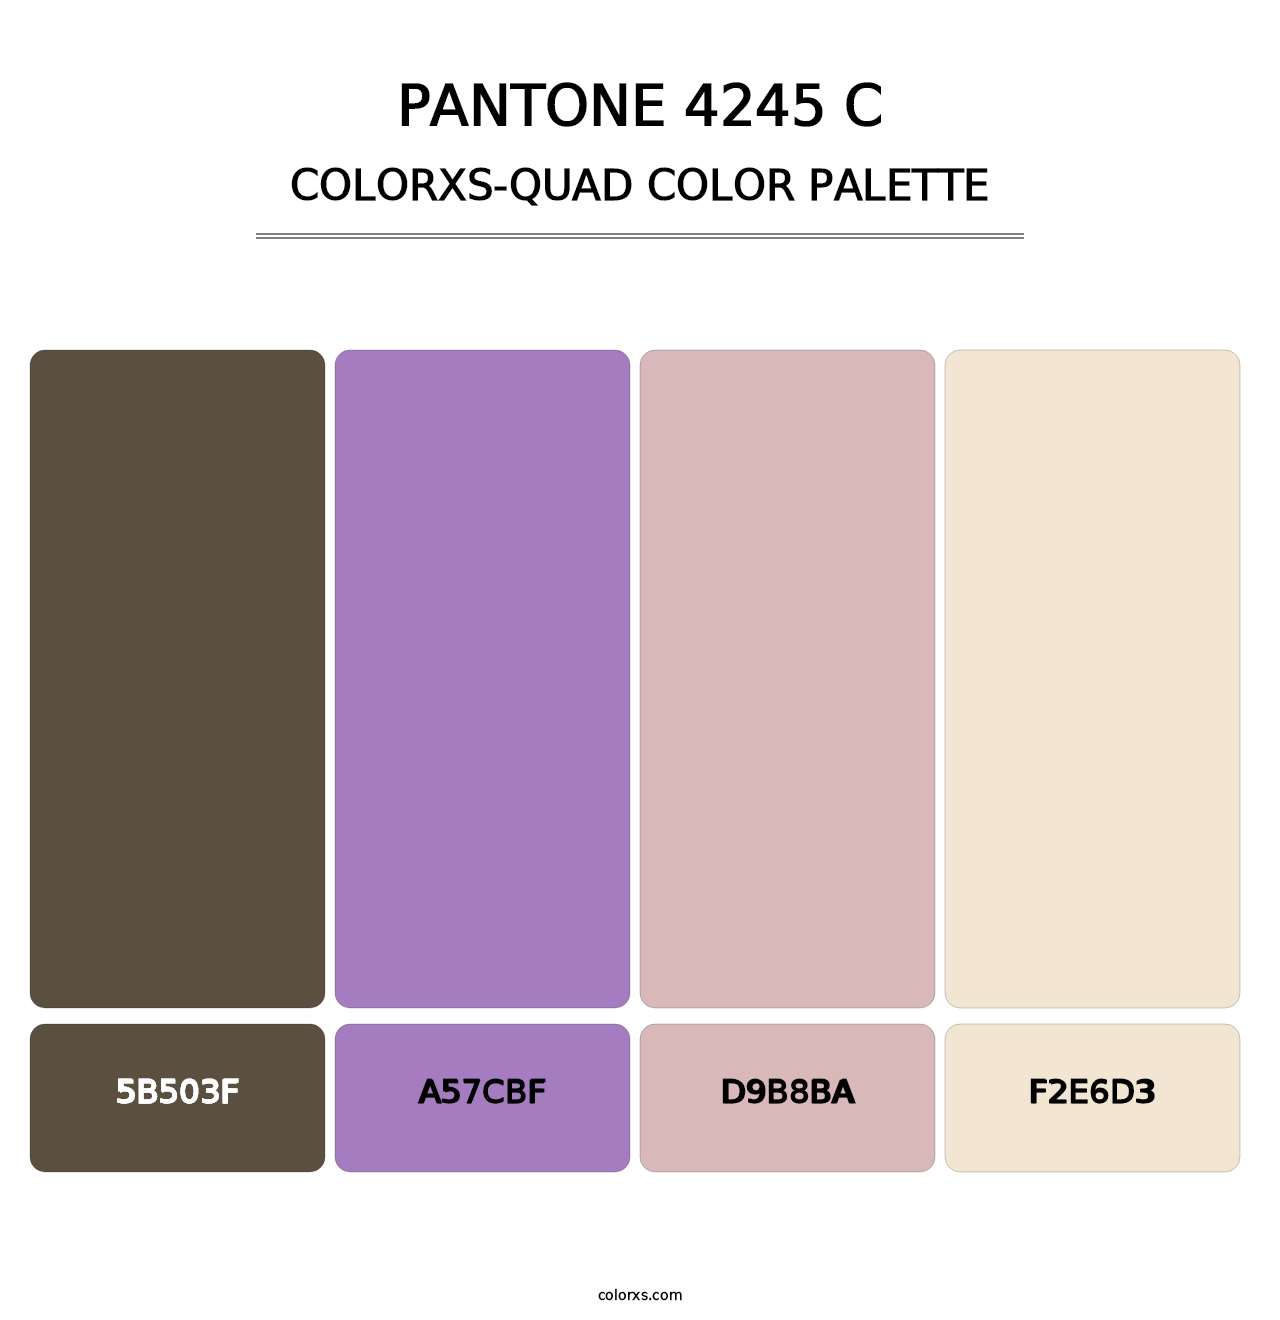 PANTONE 4245 C - Colorxs Quad Palette